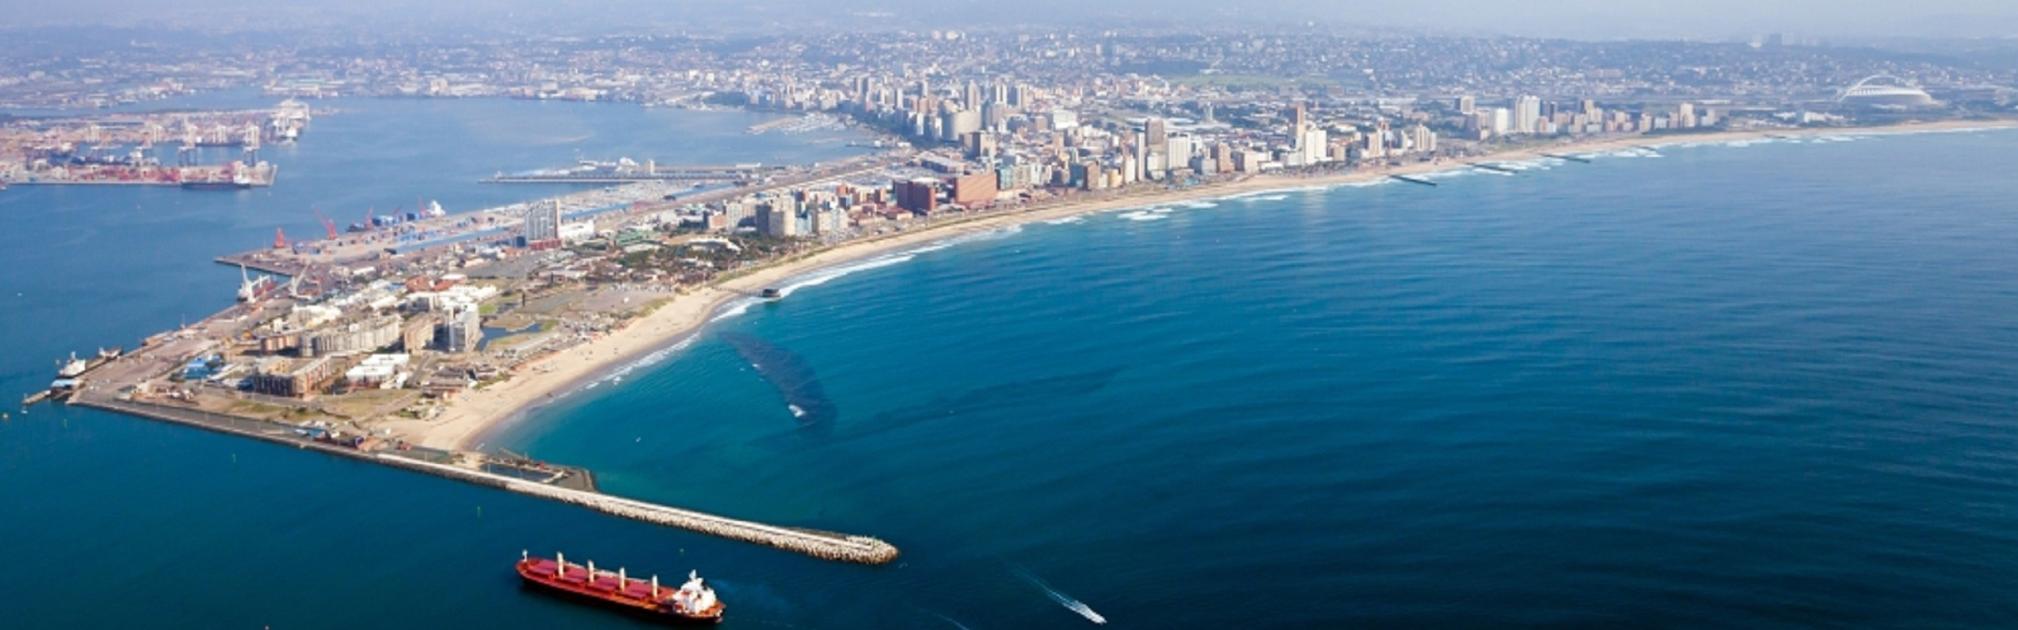 Haven van Durban